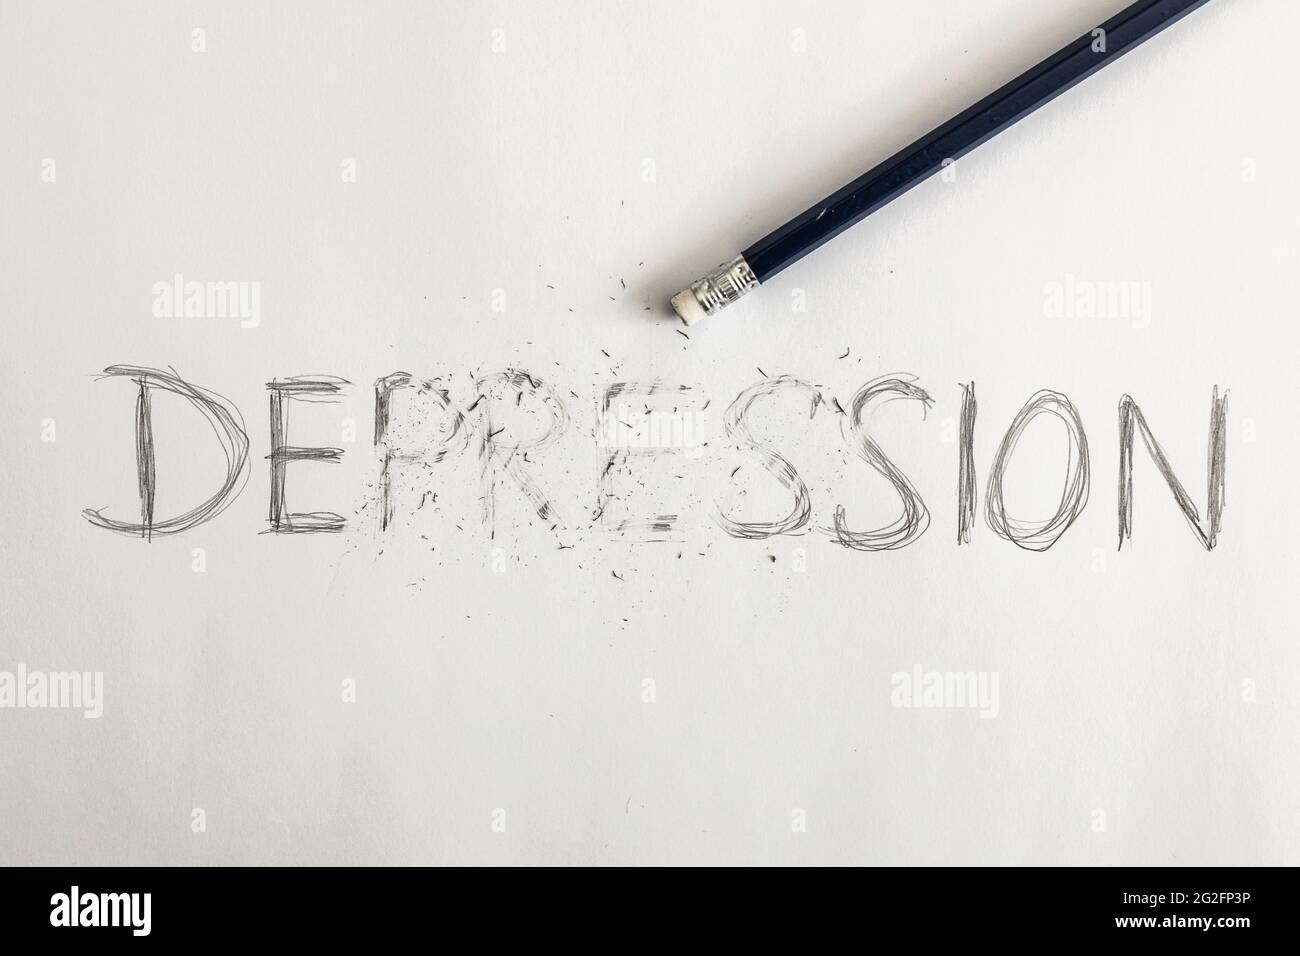 Cancellazione depressione. Depressione scritta su carta bianca con una matita, cancellata con una gomma. Simbolico per superare la depressione o trattare la depressione. Foto Stock